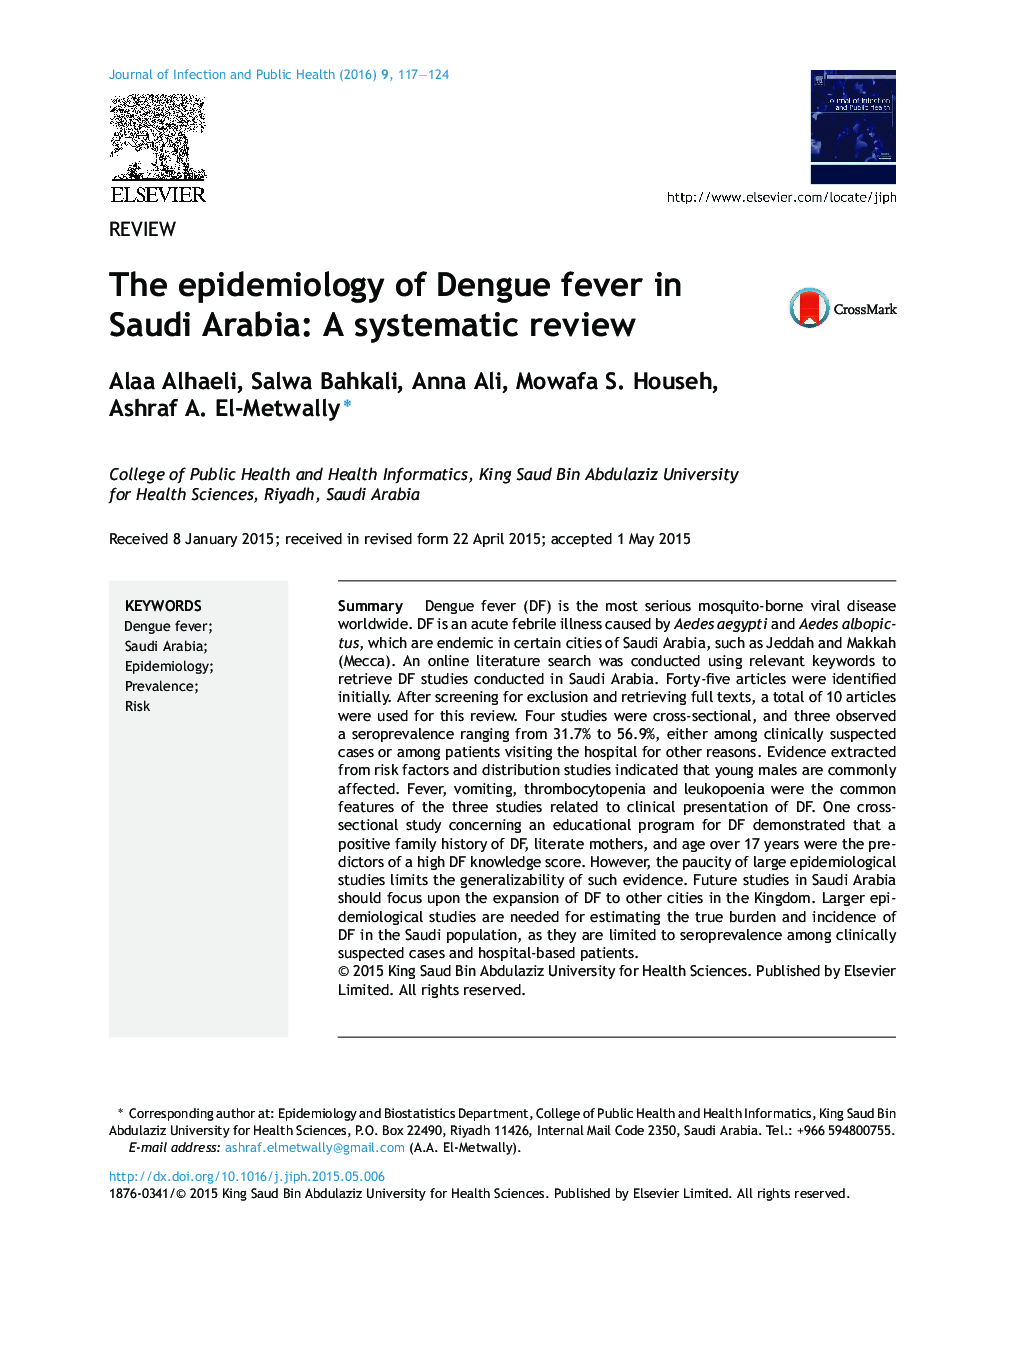 بررسی شیوع تب دانگ در عربستان سعودی: یک مرور سیستماتیک